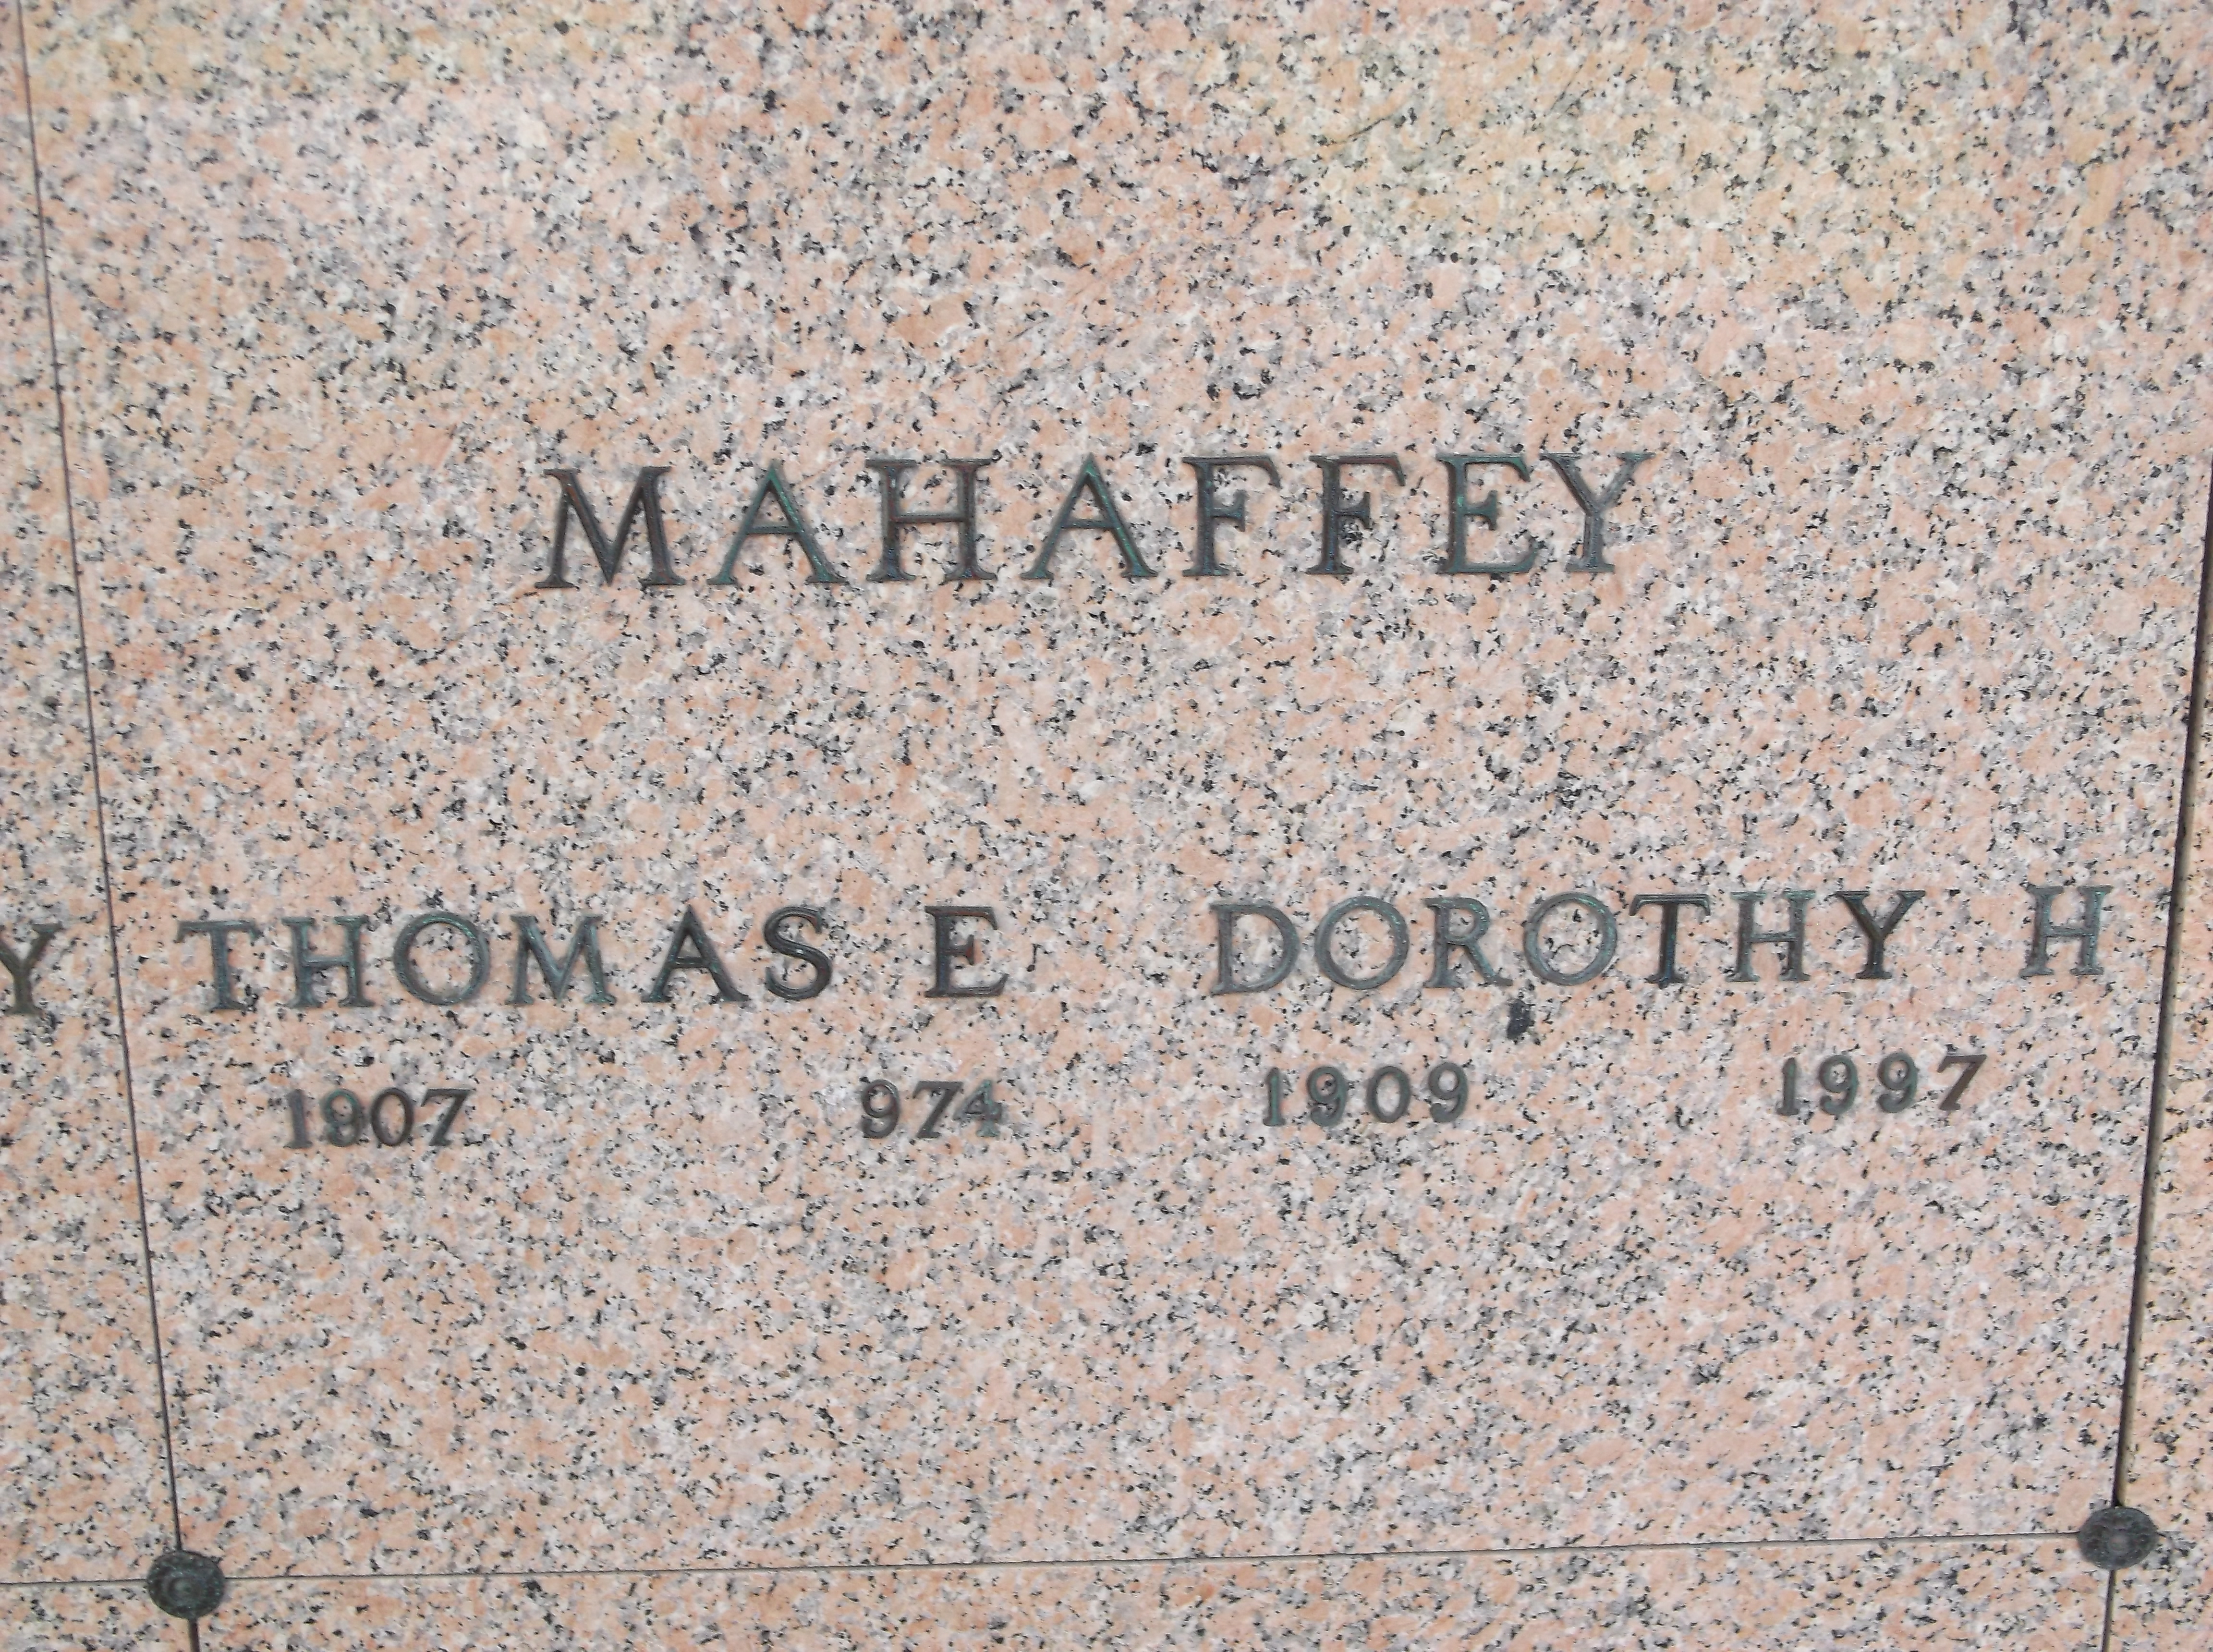 Thomas E Mahaffey